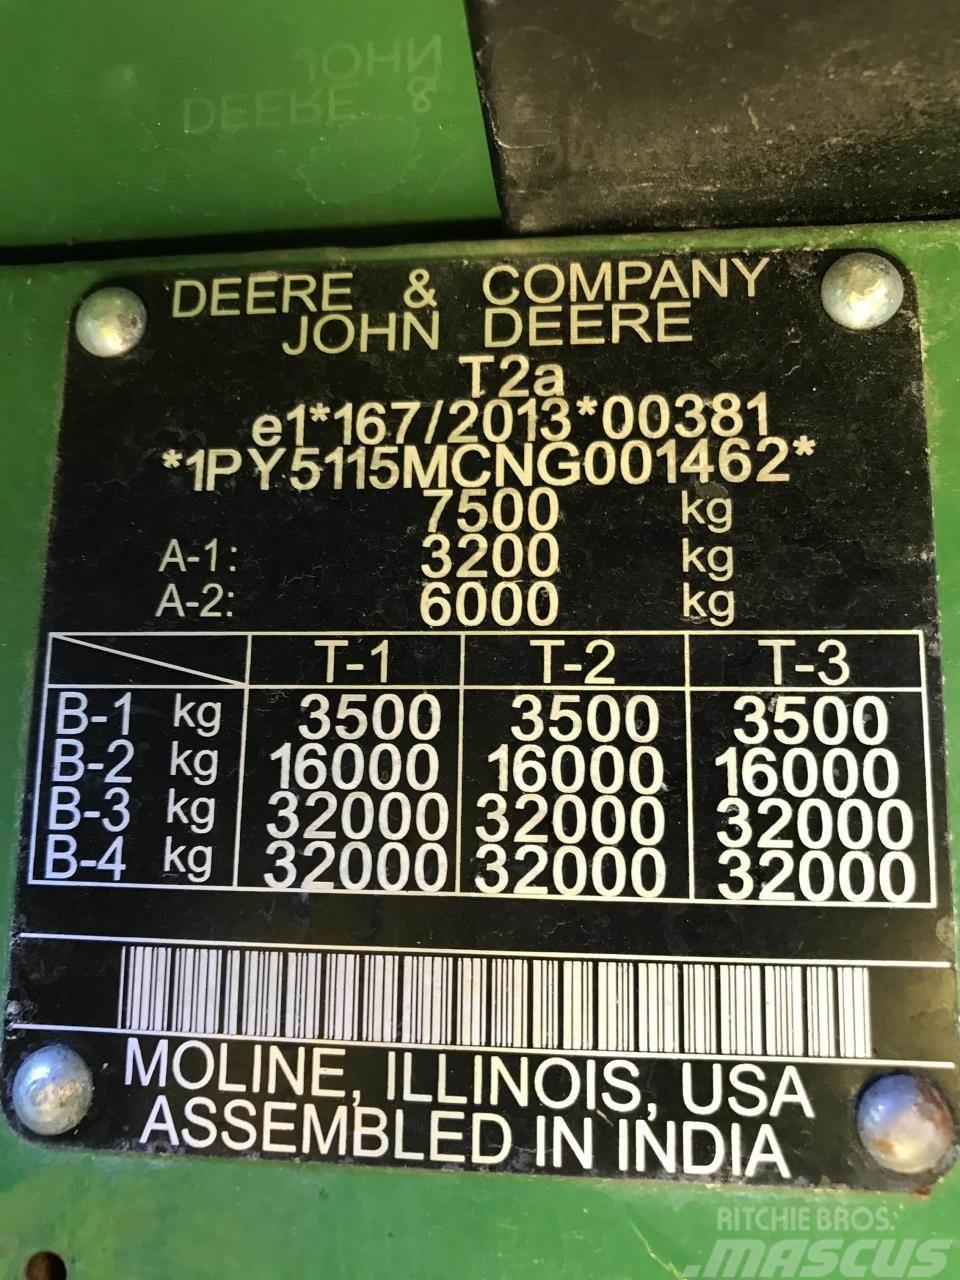 John Deere 5115M Tractors